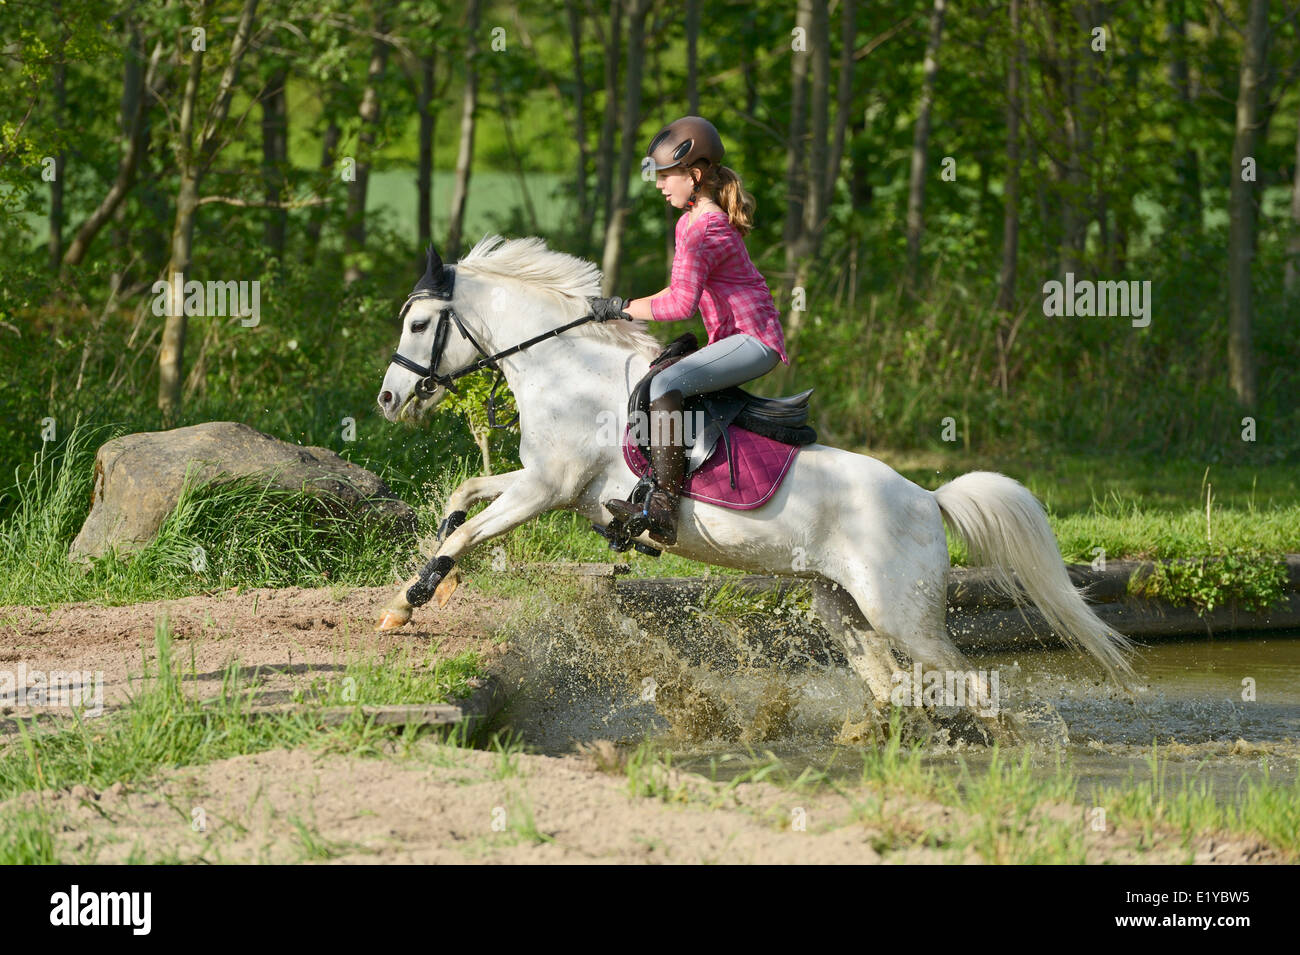 Elevin-jährige Mädchen auf der Rückseite ein Welsh Pony springen aus dem Wasser Stockfoto